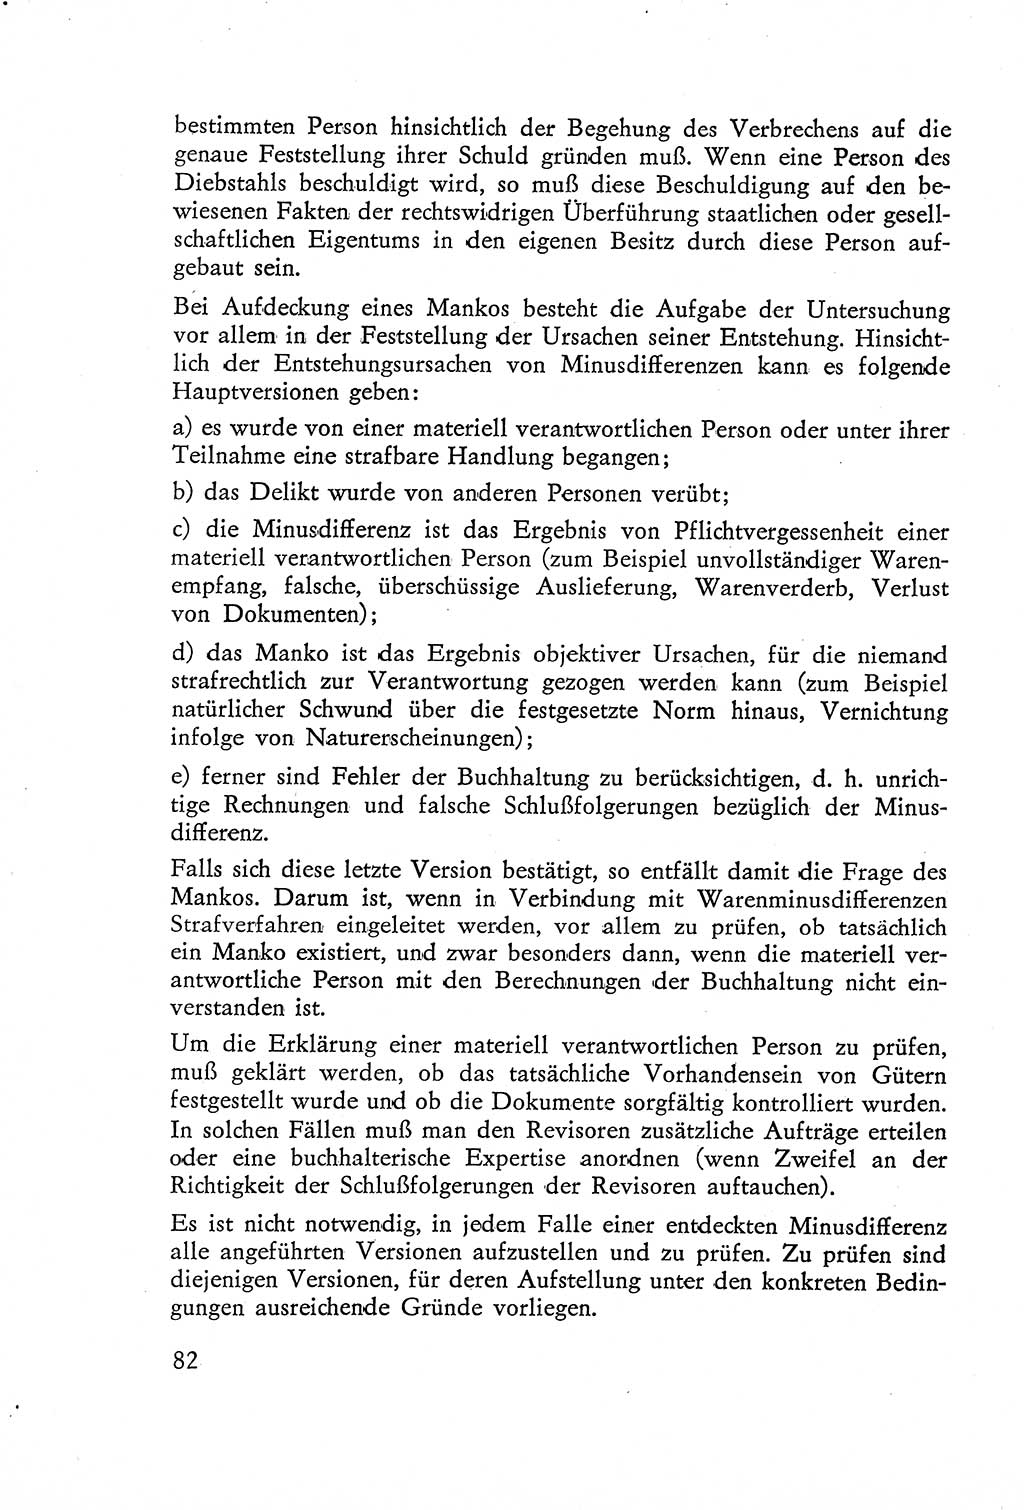 Die Untersuchung einzelner Verbrechensarten [Deutsche Demokratische Republik (DDR)] 1960, Seite 82 (Unters. Verbr.-Art. DDR 1960, S. 82)